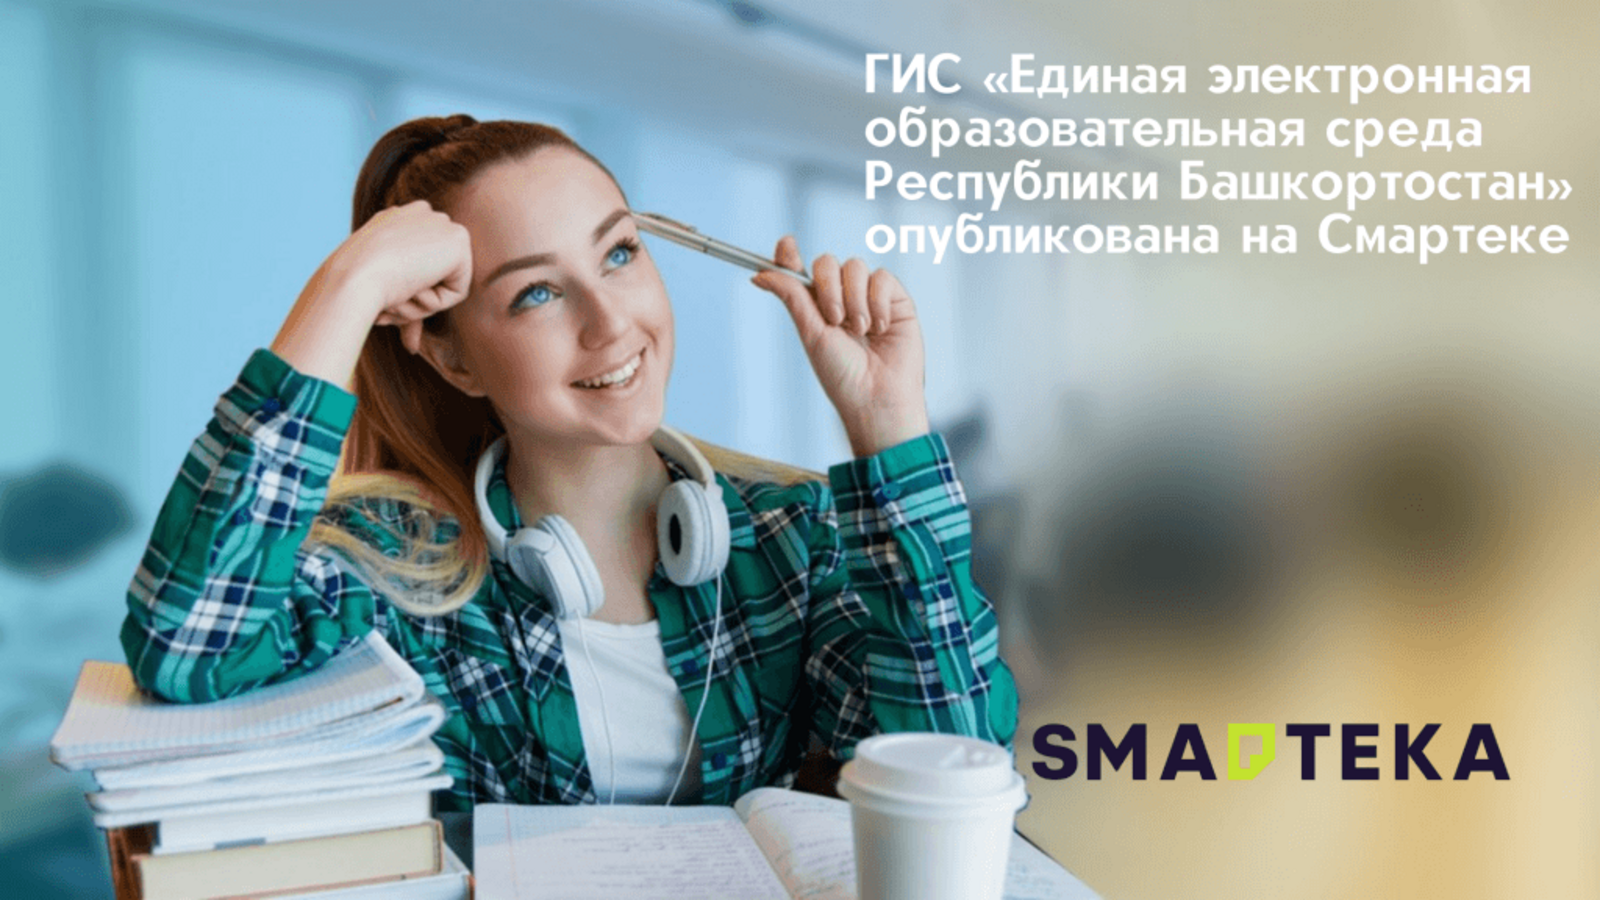 Проект «Единая электронная образовательная среда Республики Башкортостан» доступен для тиражирования в регионах